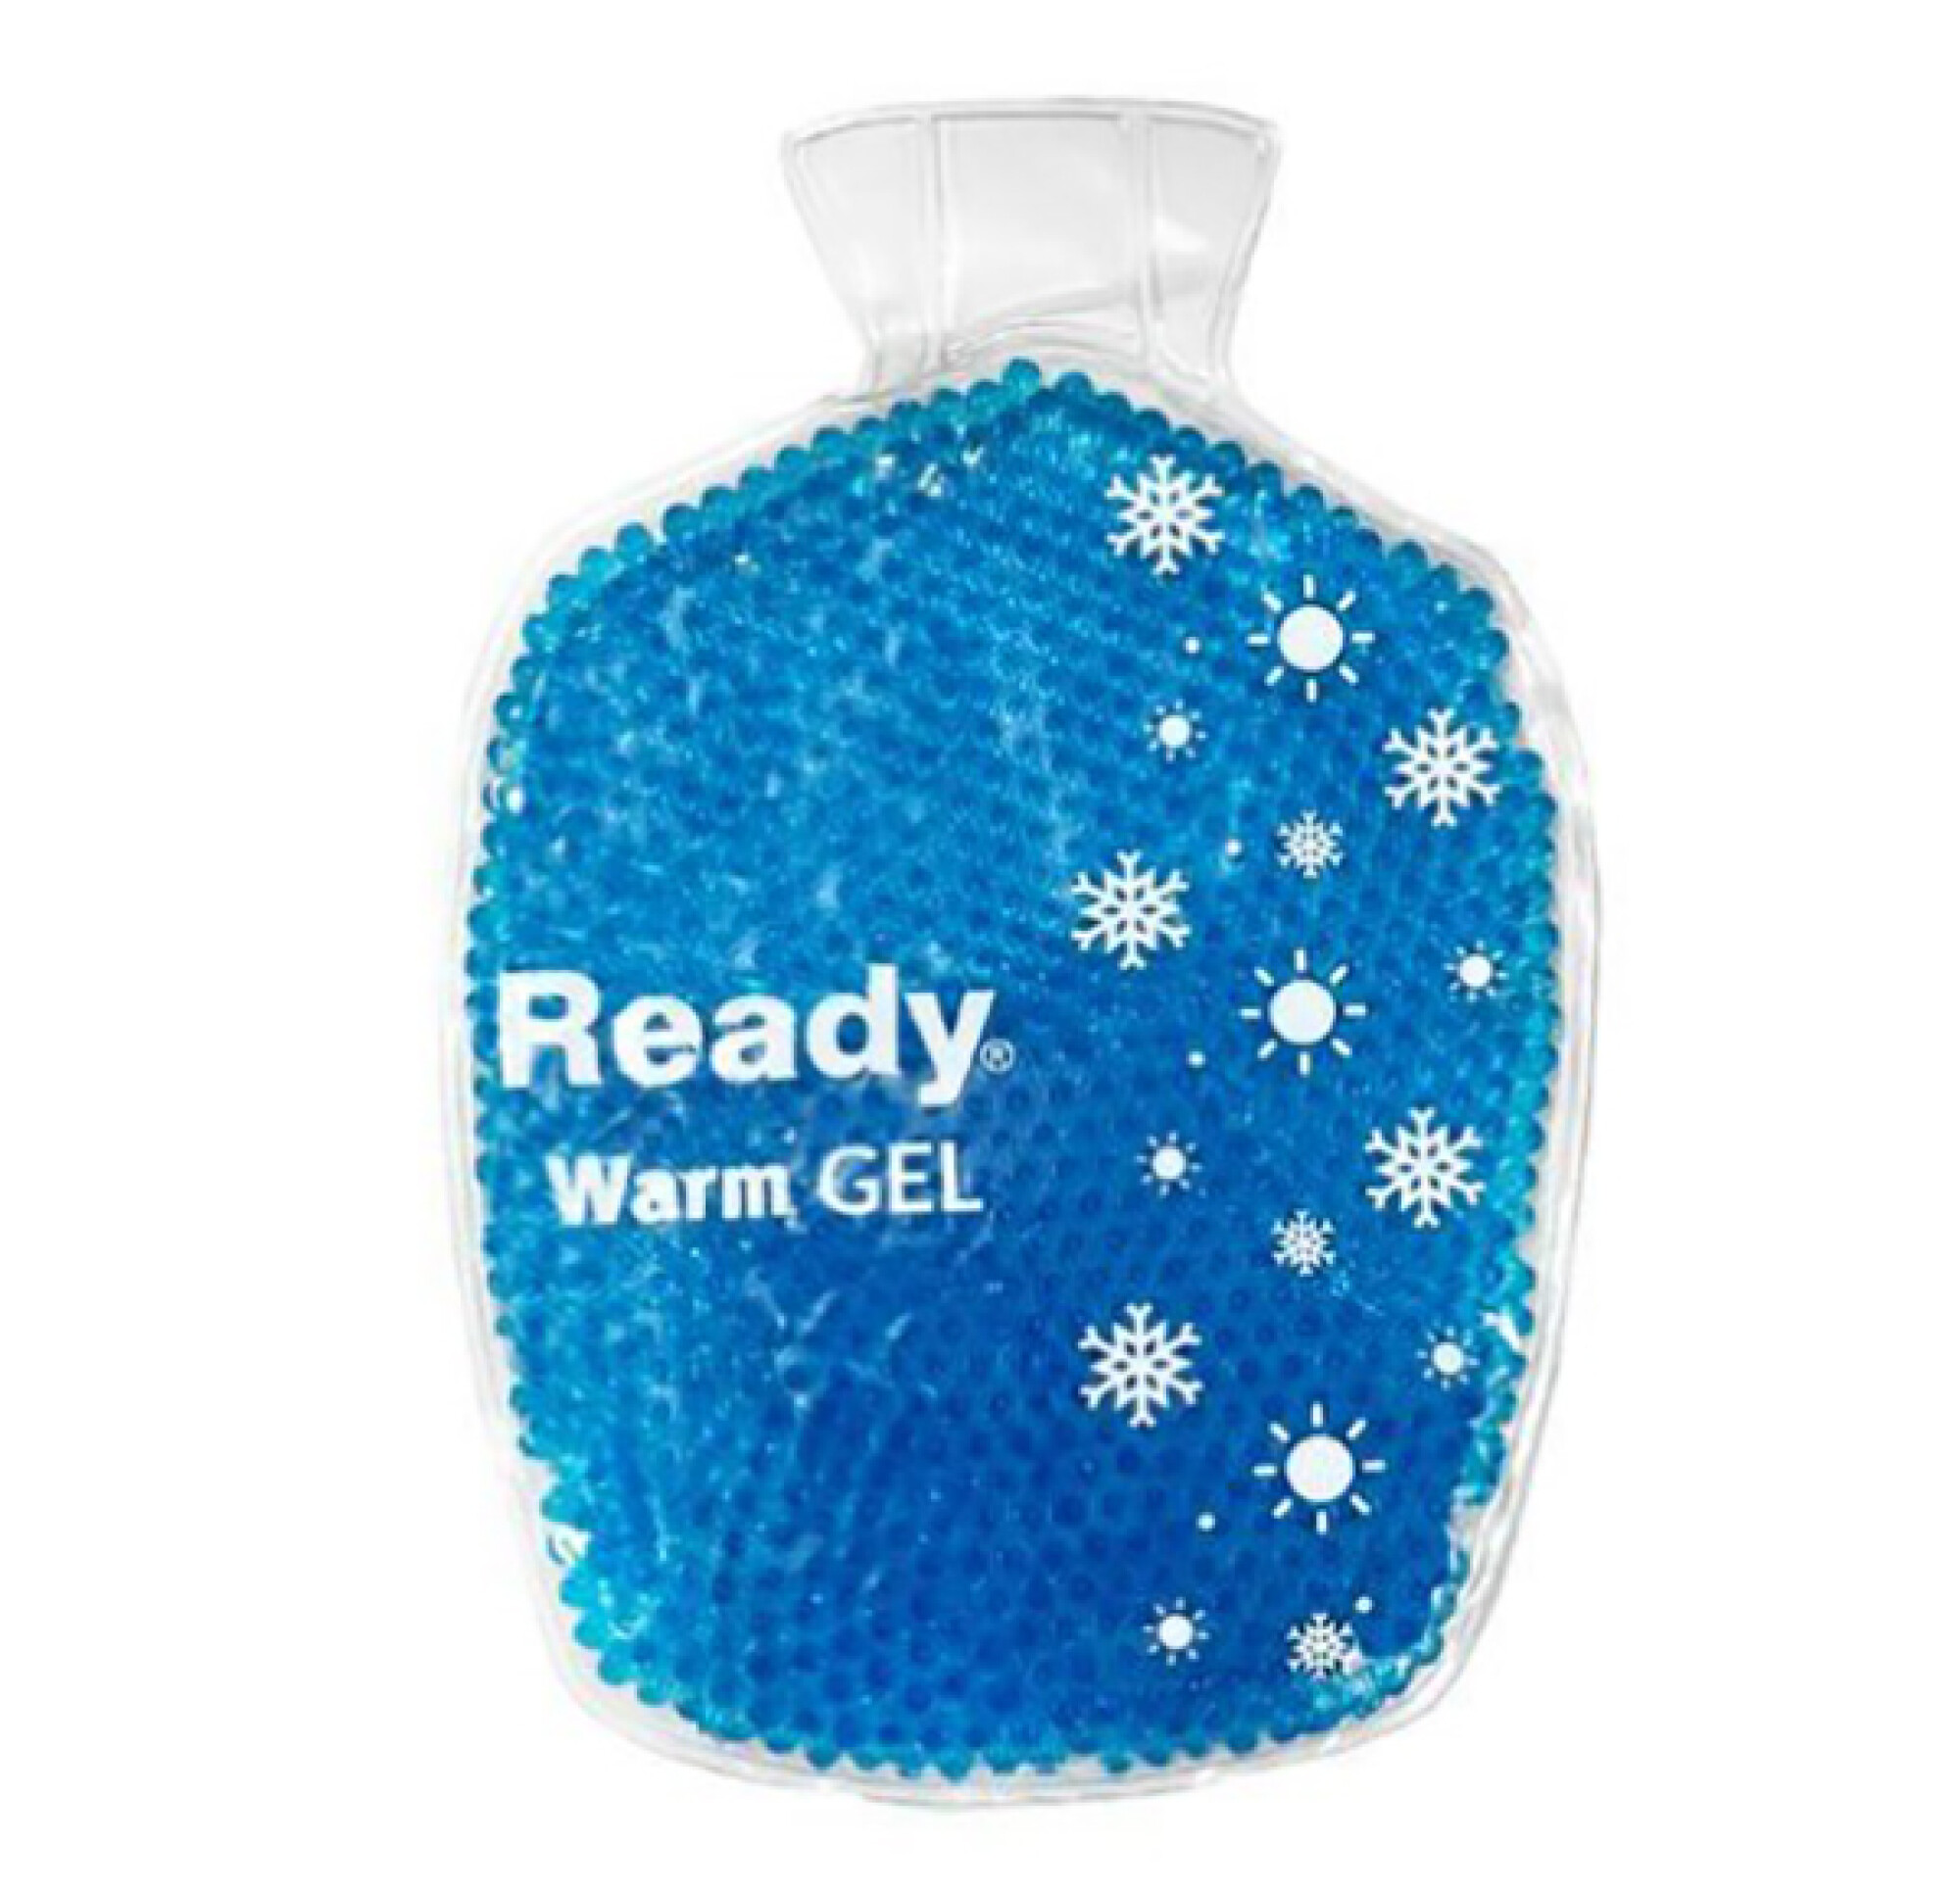 Bolsa de gel en perlas frío/calor Ready Warm — Farmacia Don Bosco